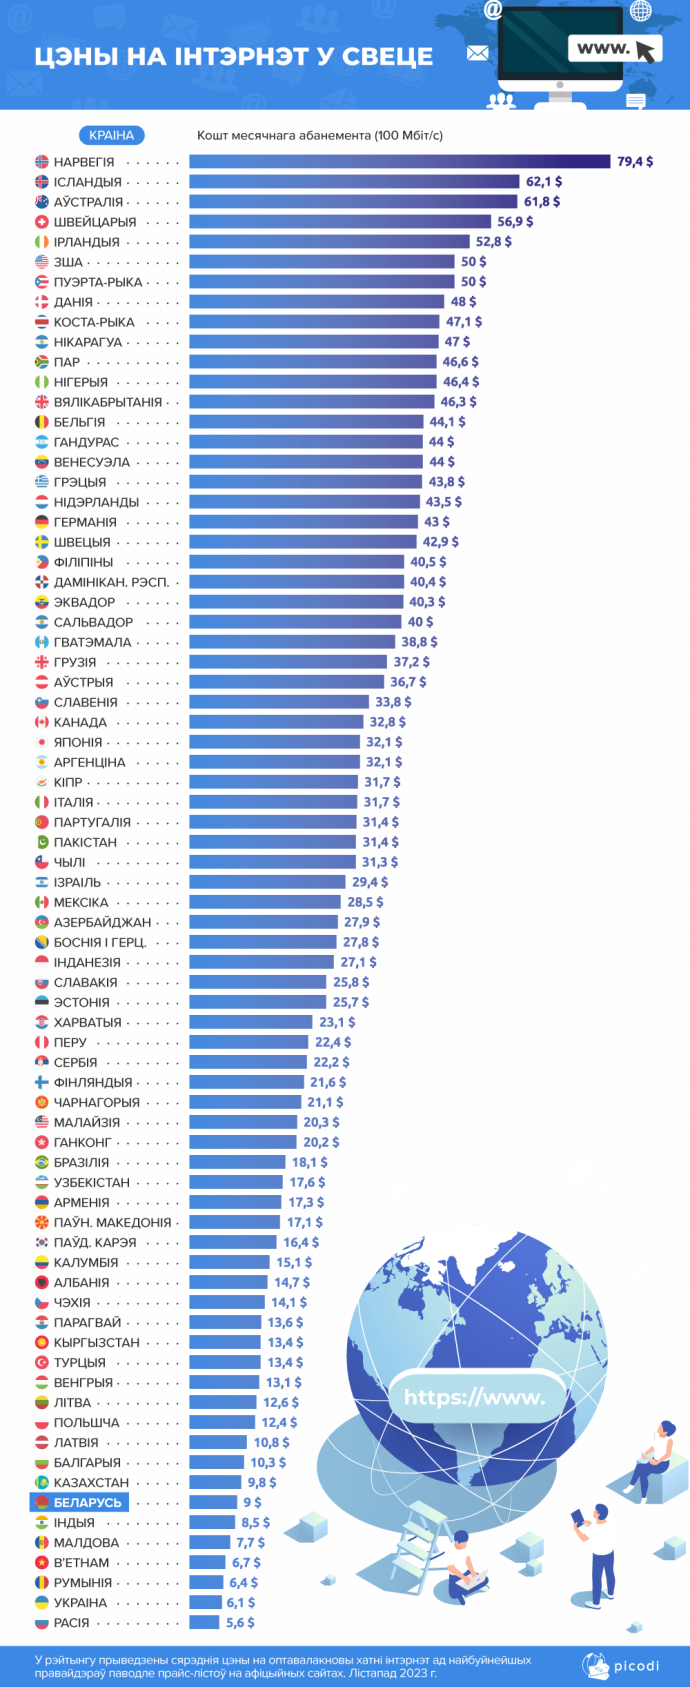  Беларусь в ТОПе стран с самым доступным интернетом